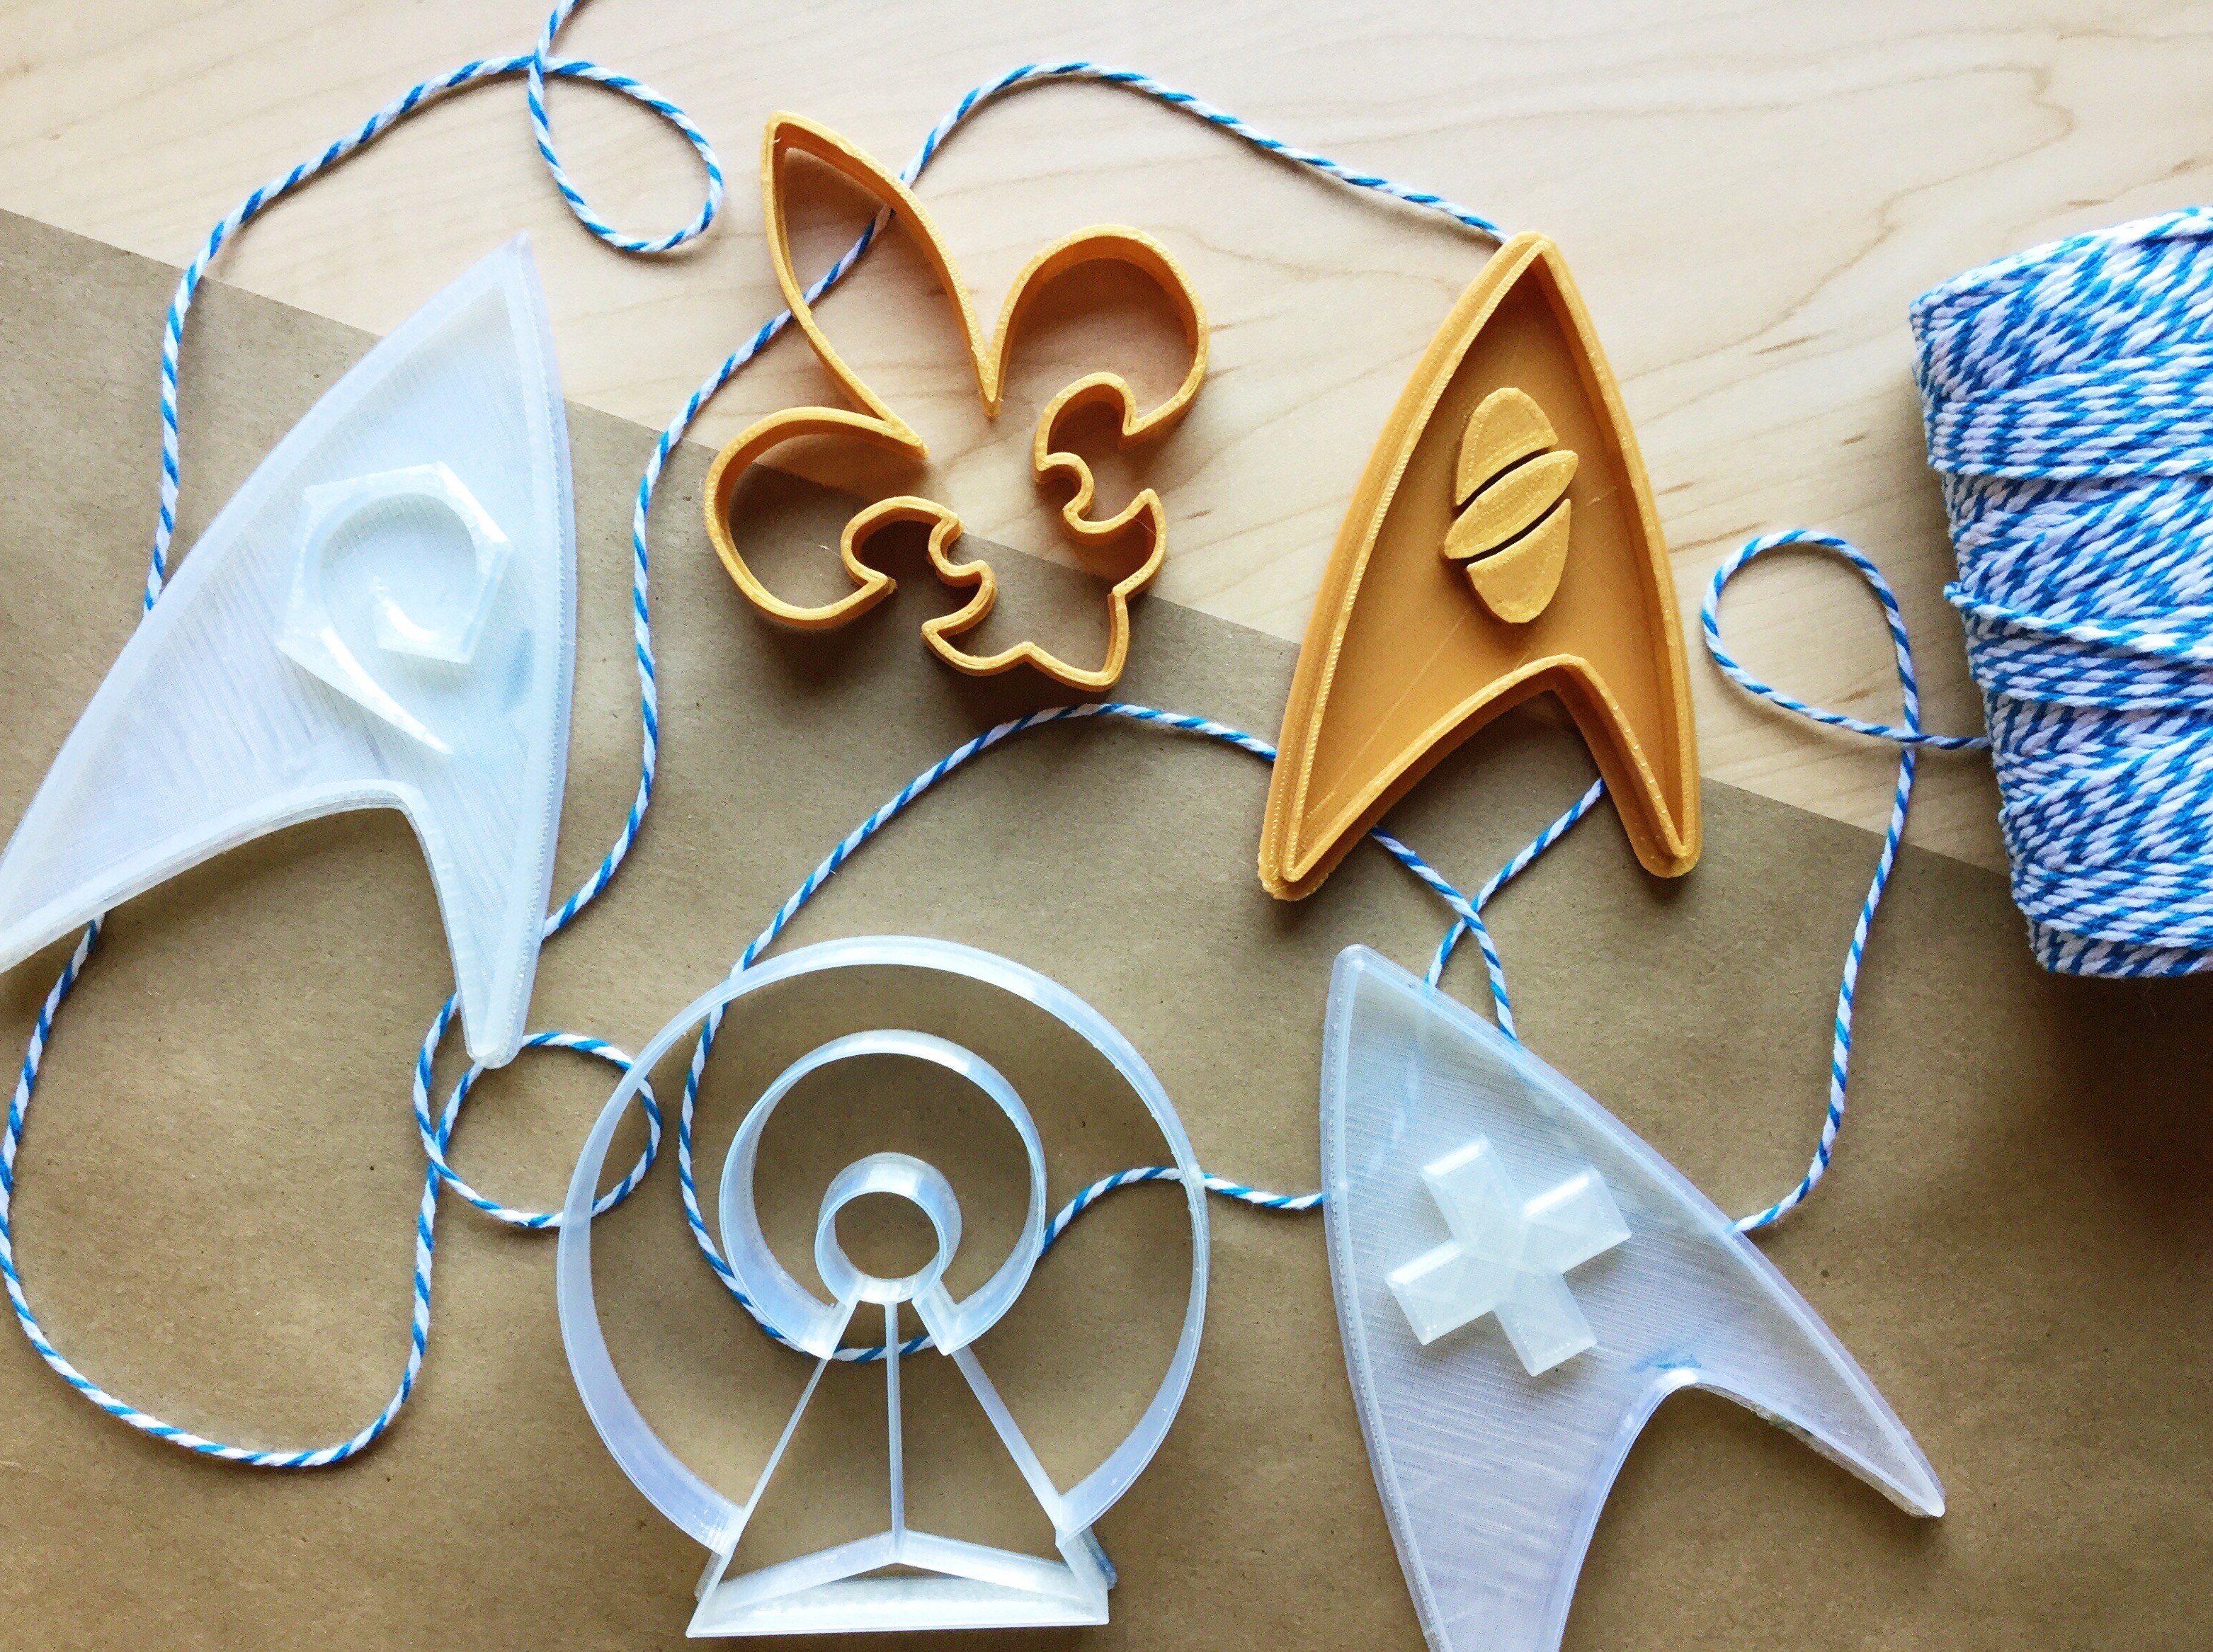 3D printed Star Trek and fleur de lis cookie cutters